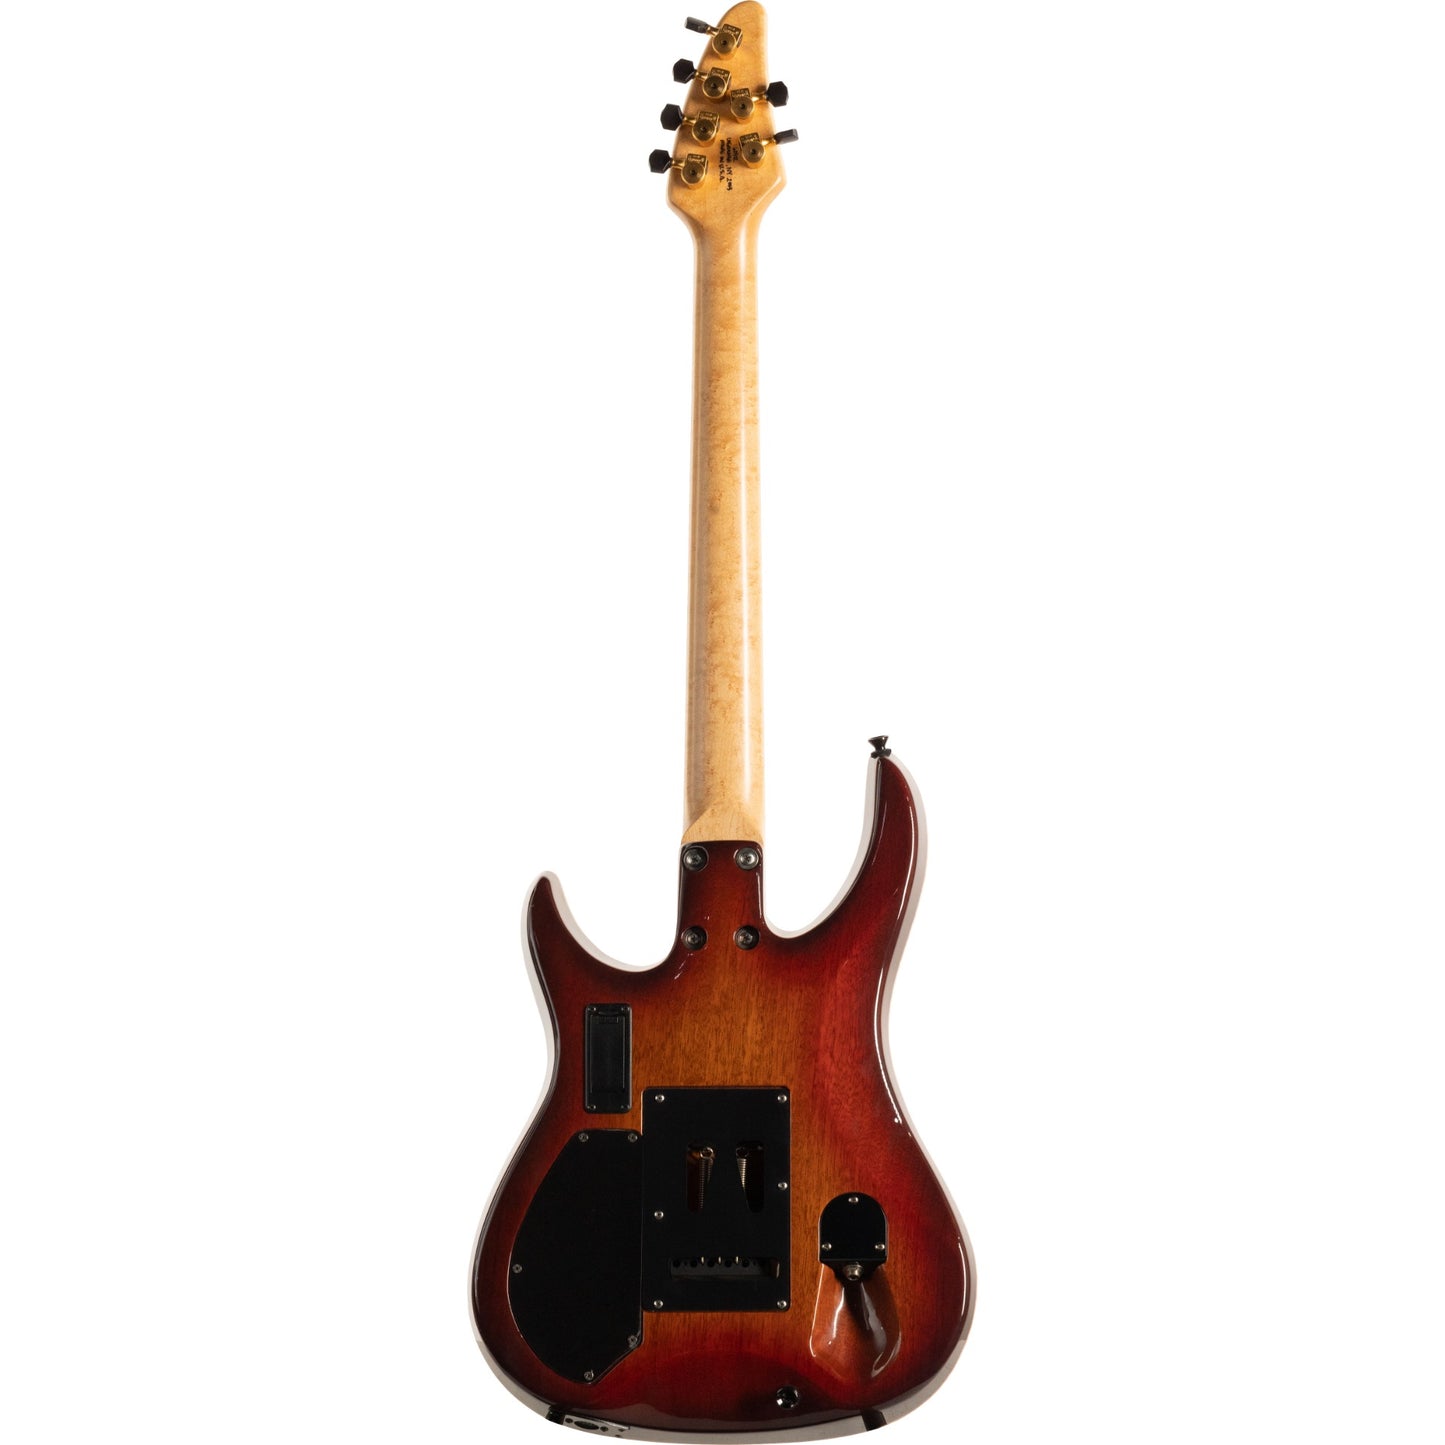 Brian Moore Custom C90p.13 Electric Guitar